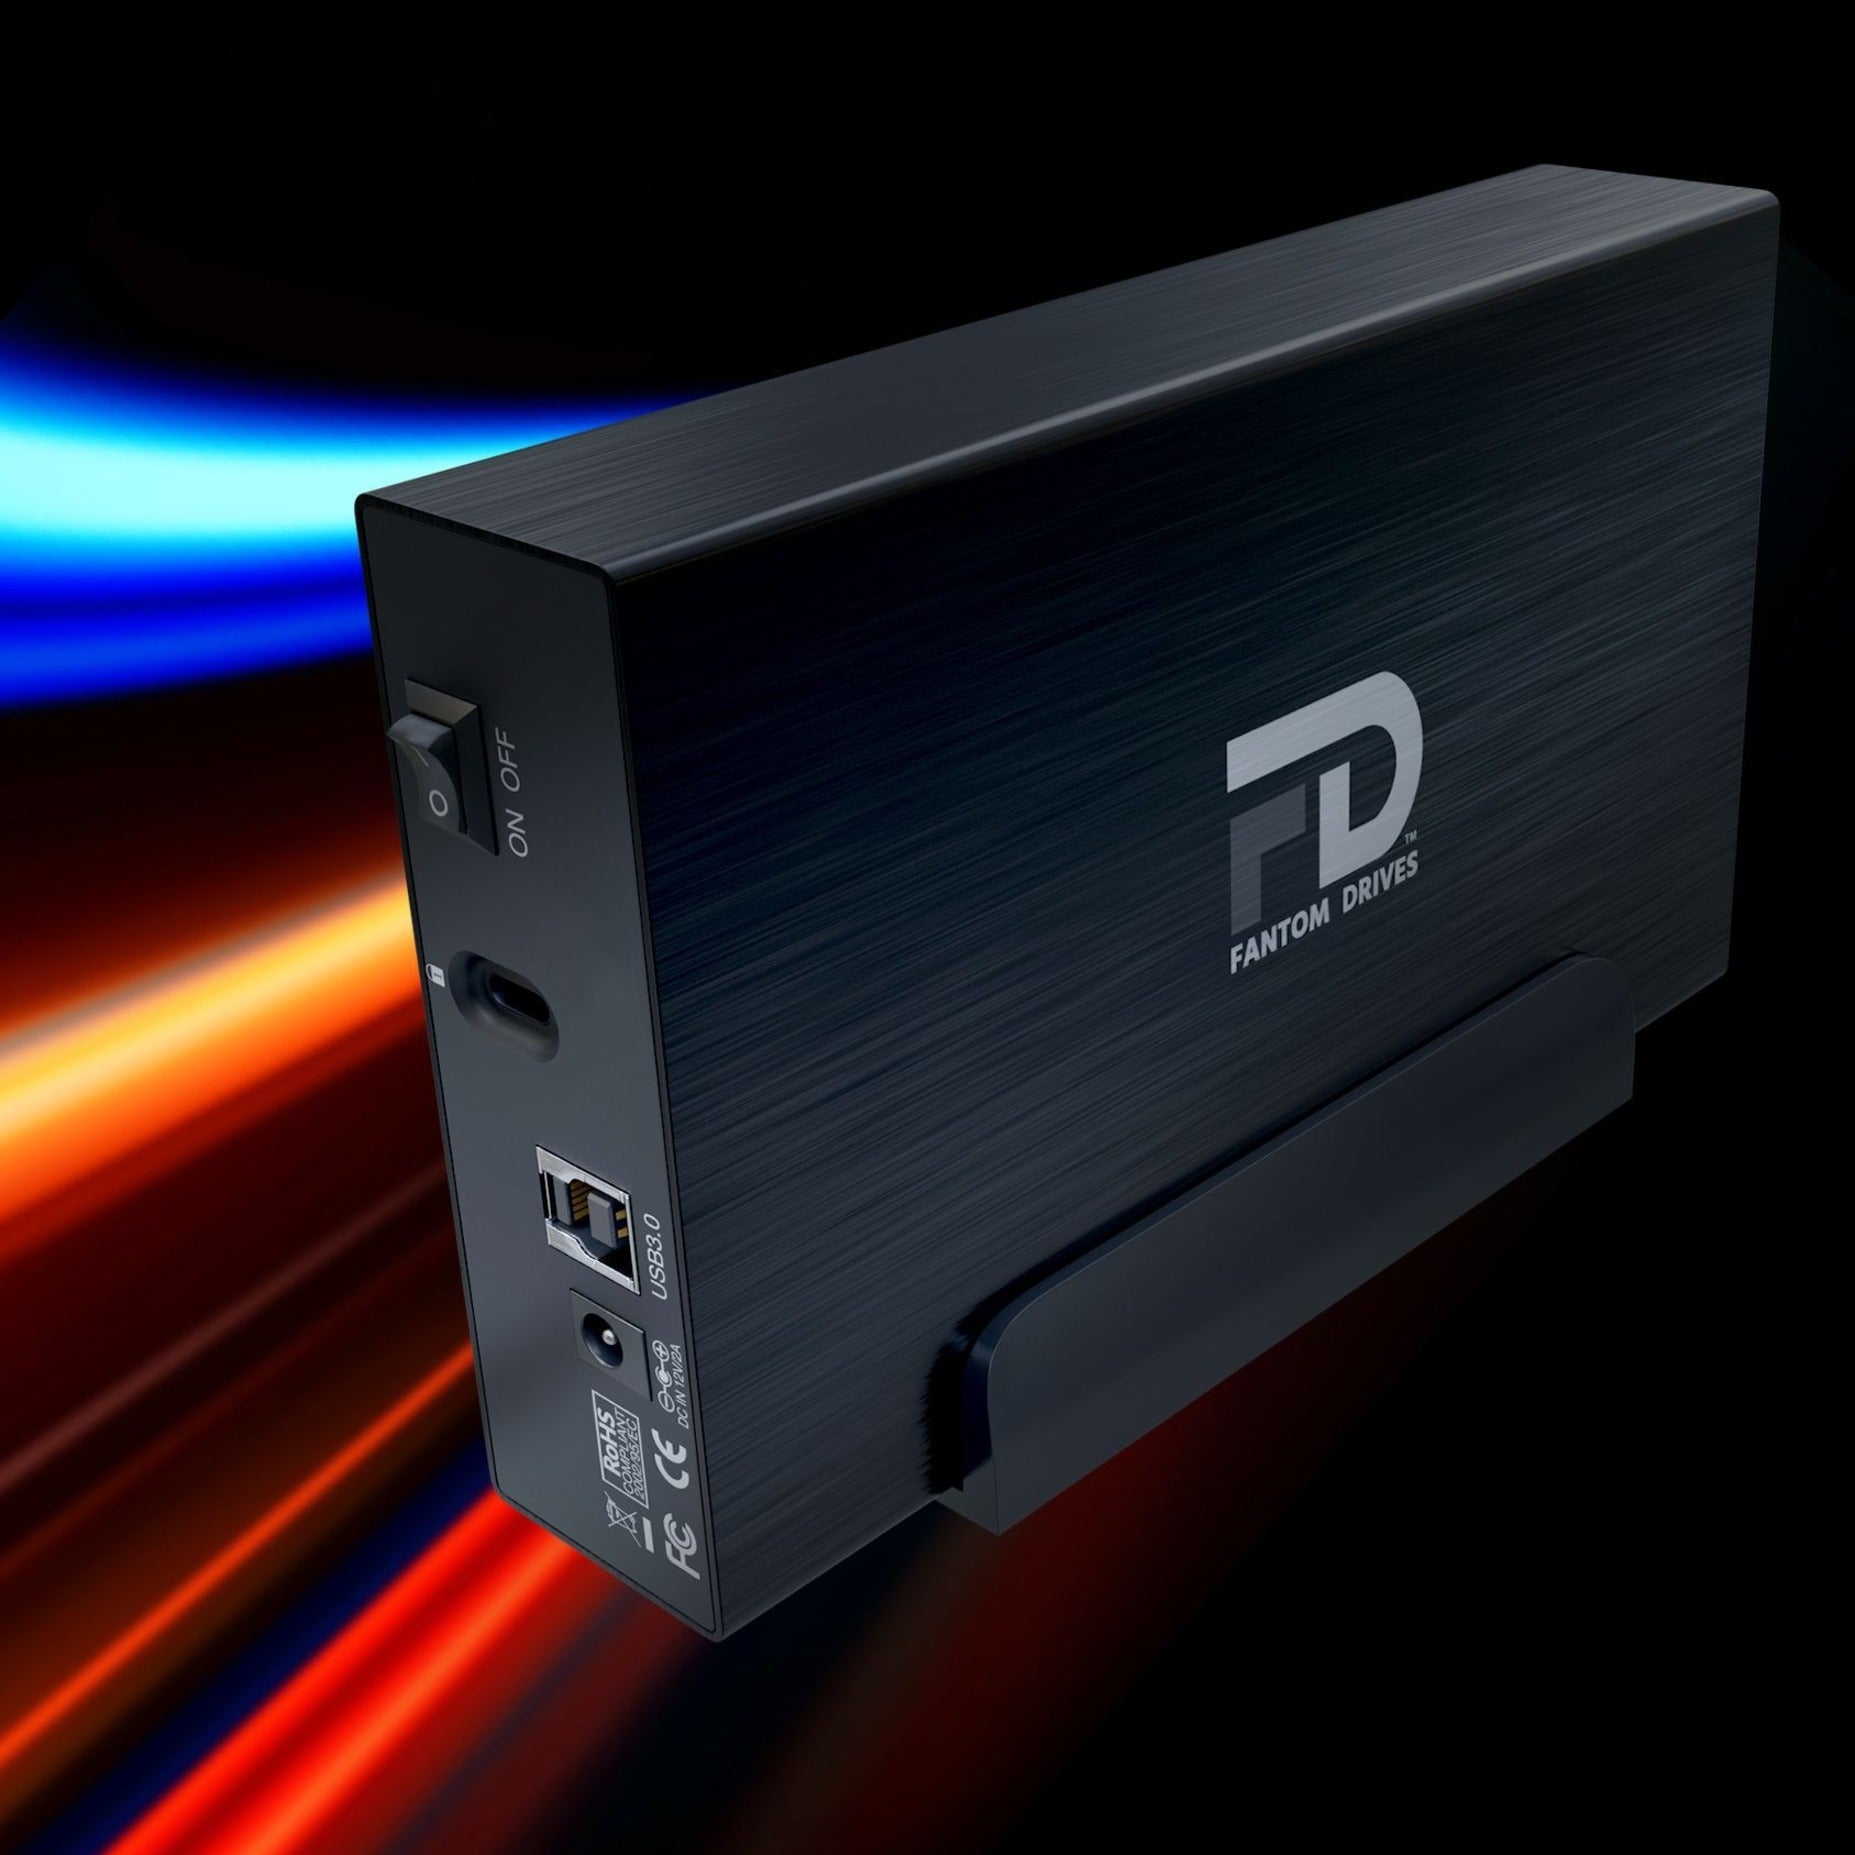 Fantom Drives GF3B18000U GForce 3 External Hard Drive, 18TB, USB 3.0, 5400RPM, Black